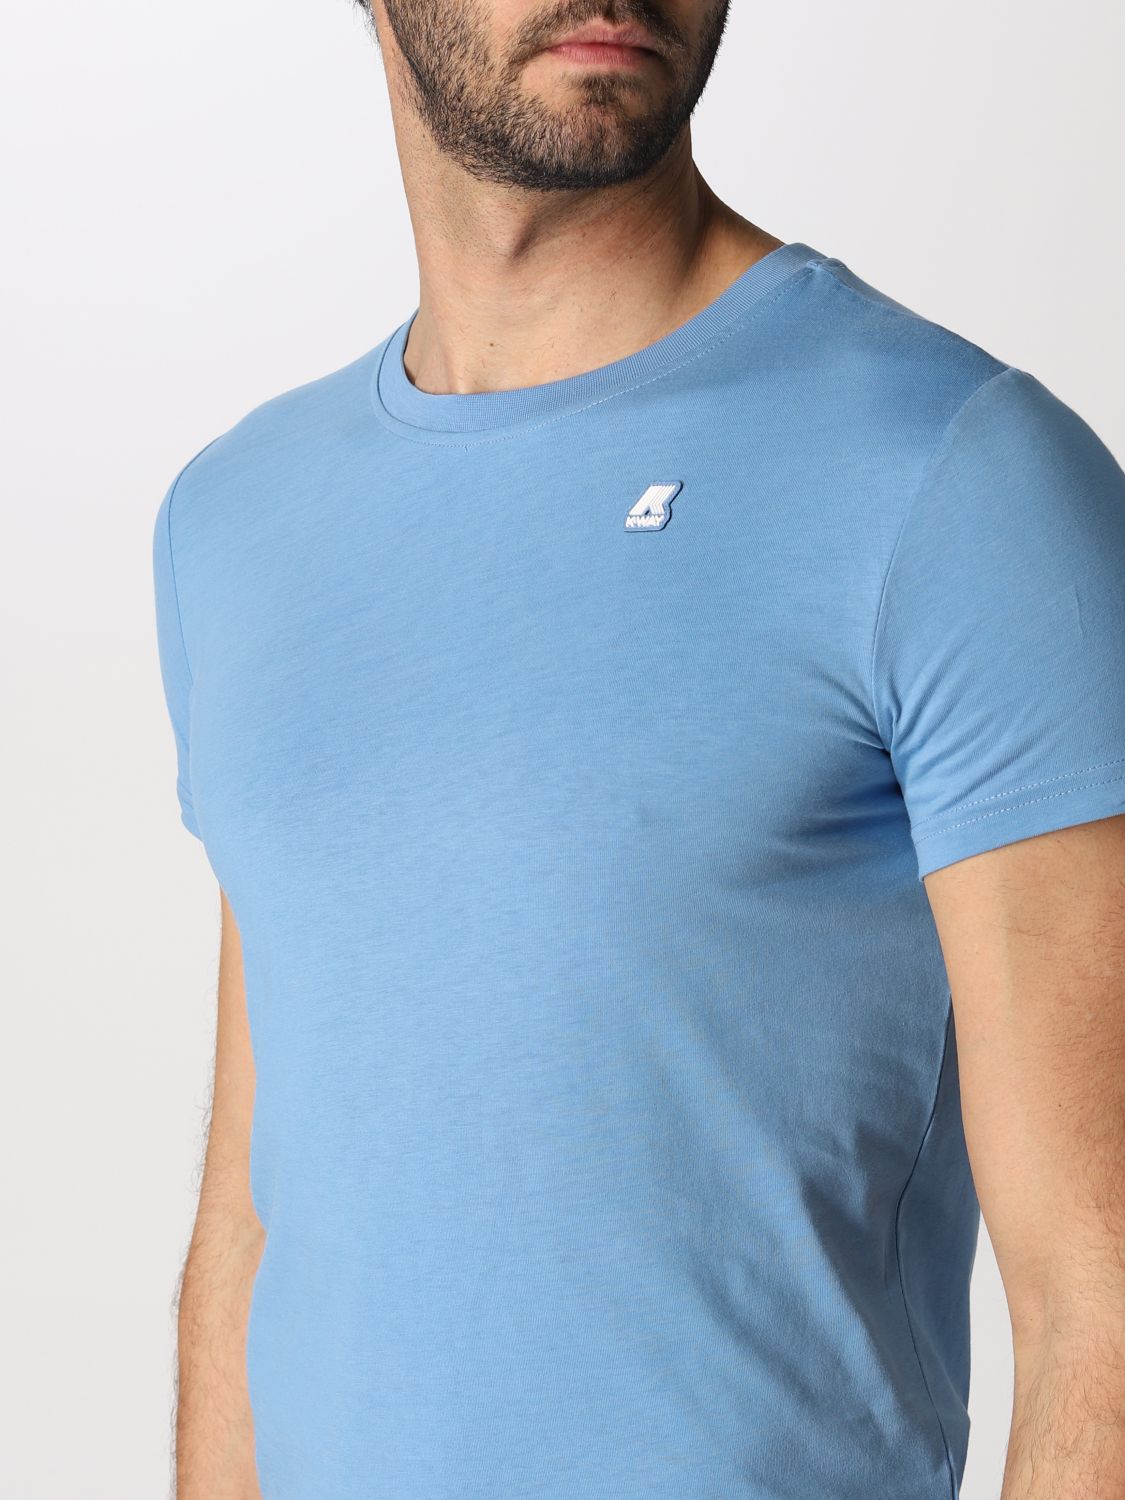 티셔츠 K-웨이: 티셔츠 남성 K-way 노드 블루 3